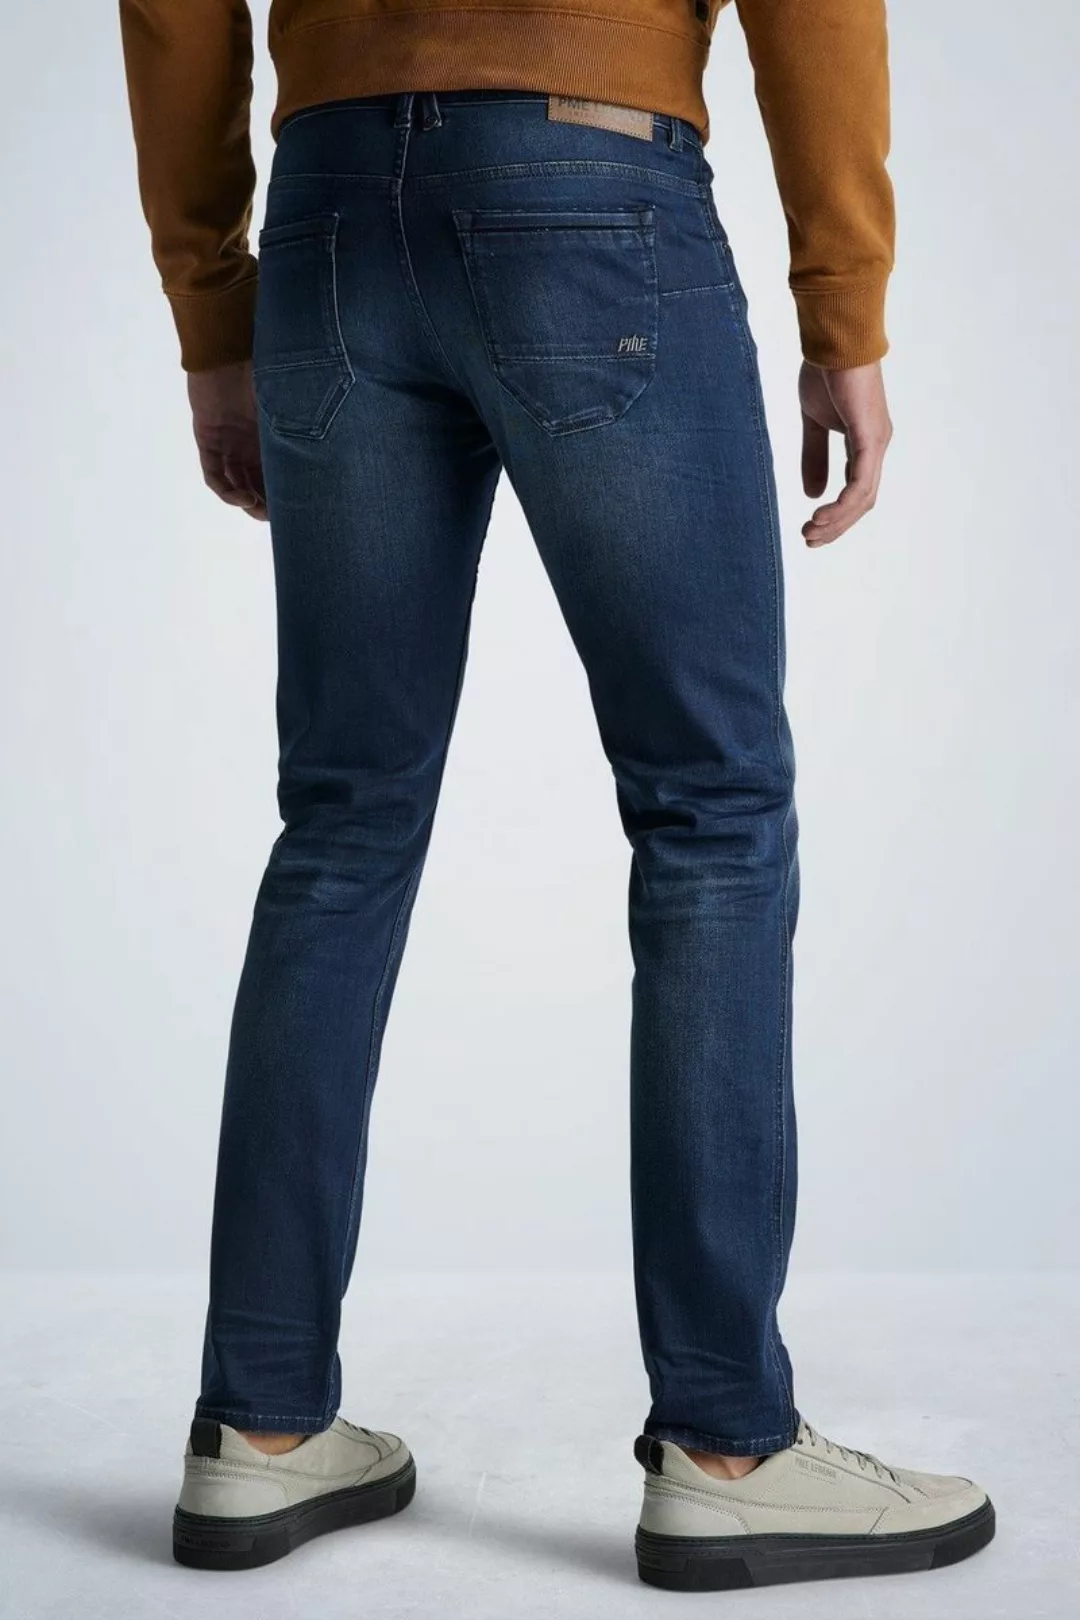 PME Legend Nightflight Jeans Dunkelblau NBW - Größe W 38 - L 32 günstig online kaufen